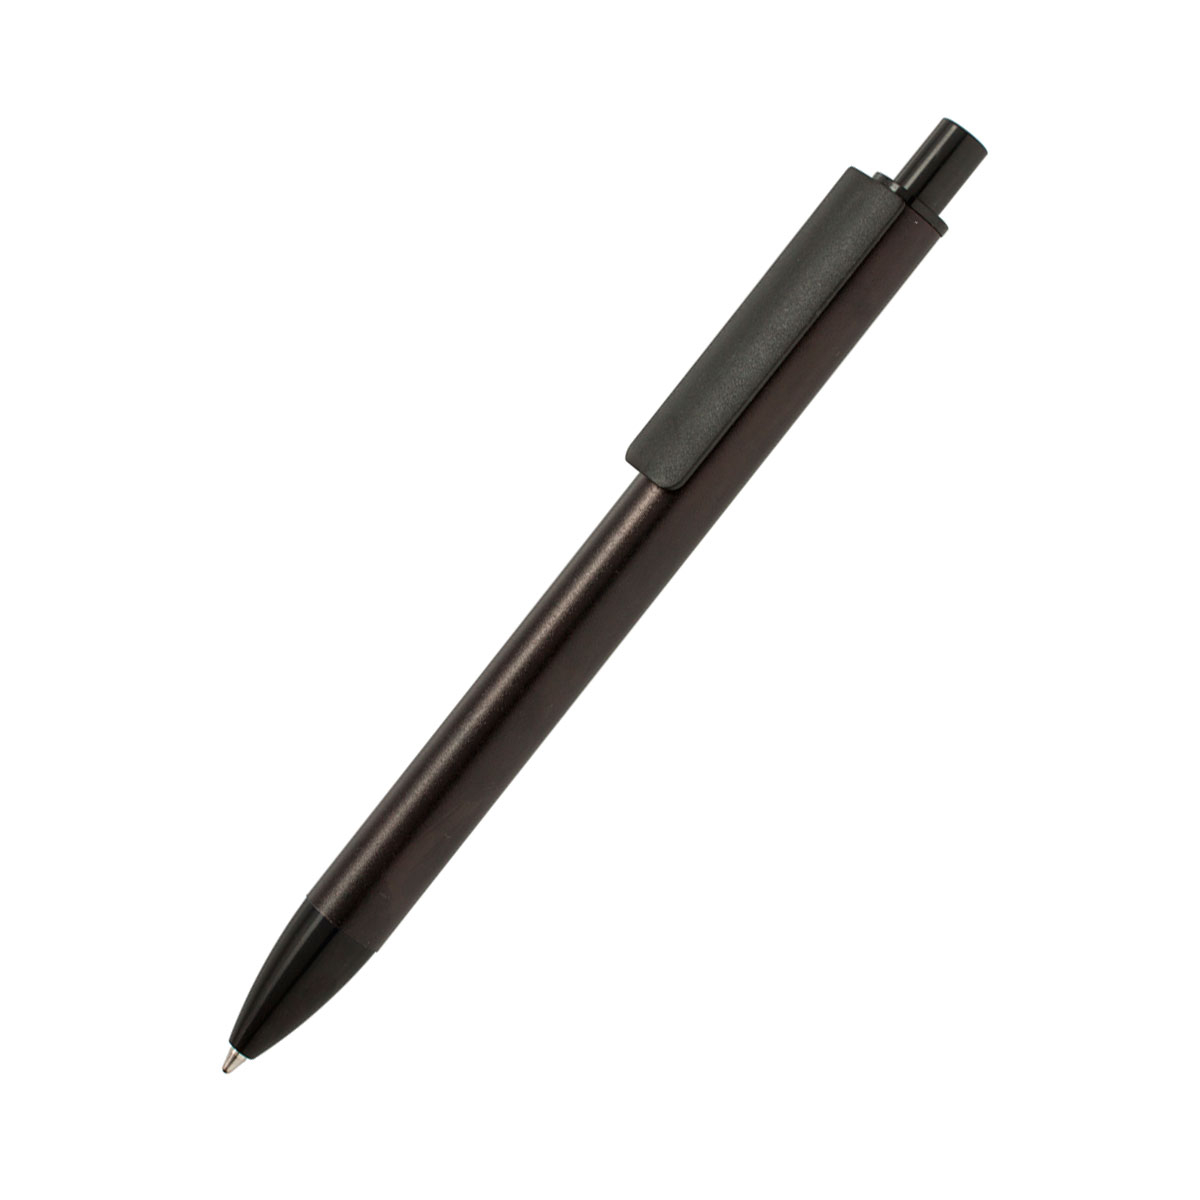 Ручка металлическая Buller - Зеленый FF